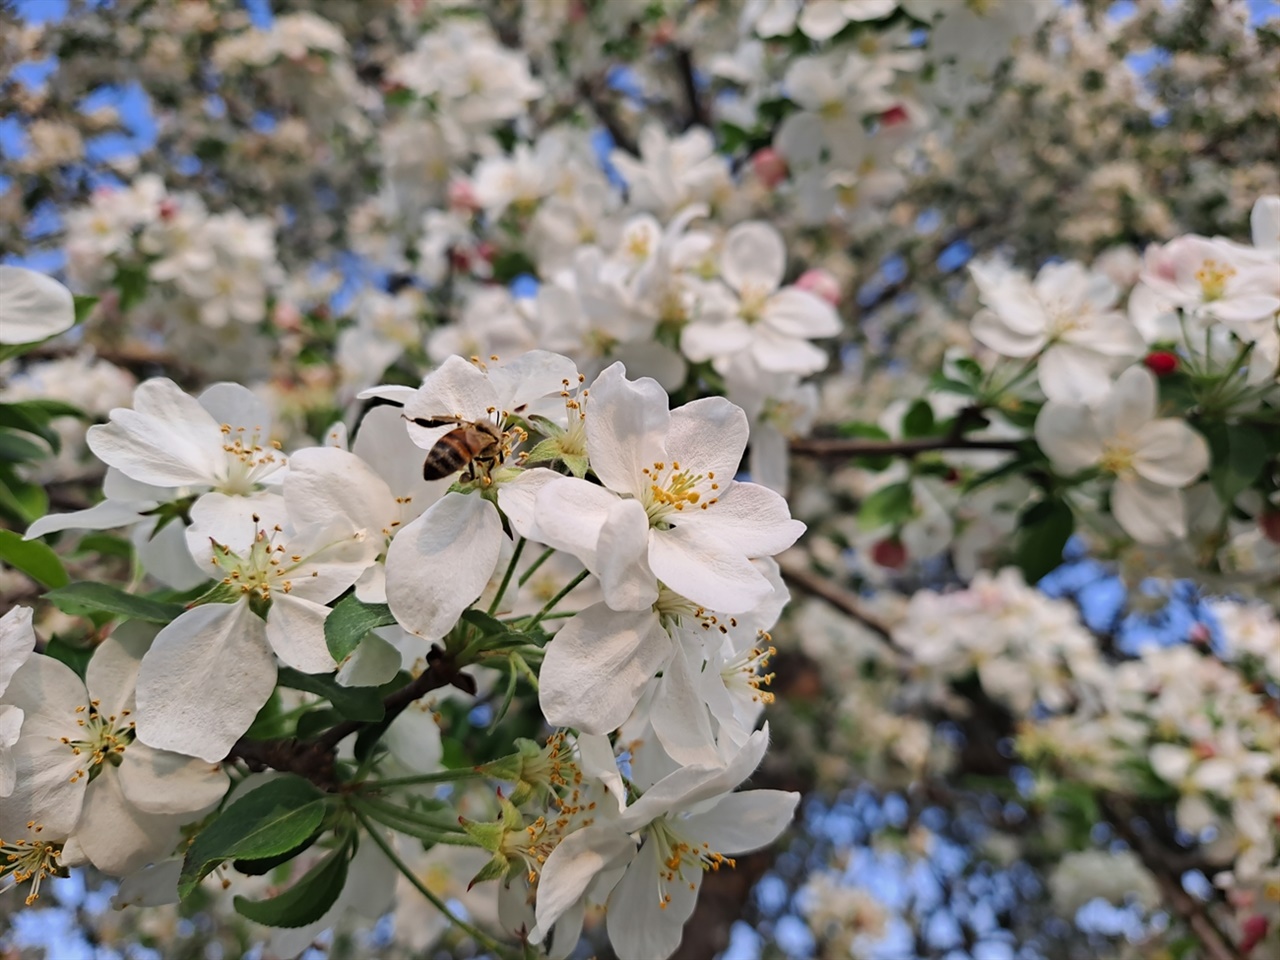  만발한 꽃사과나무 꽃에는 벌들이 오가며 꿀을 딴다.
